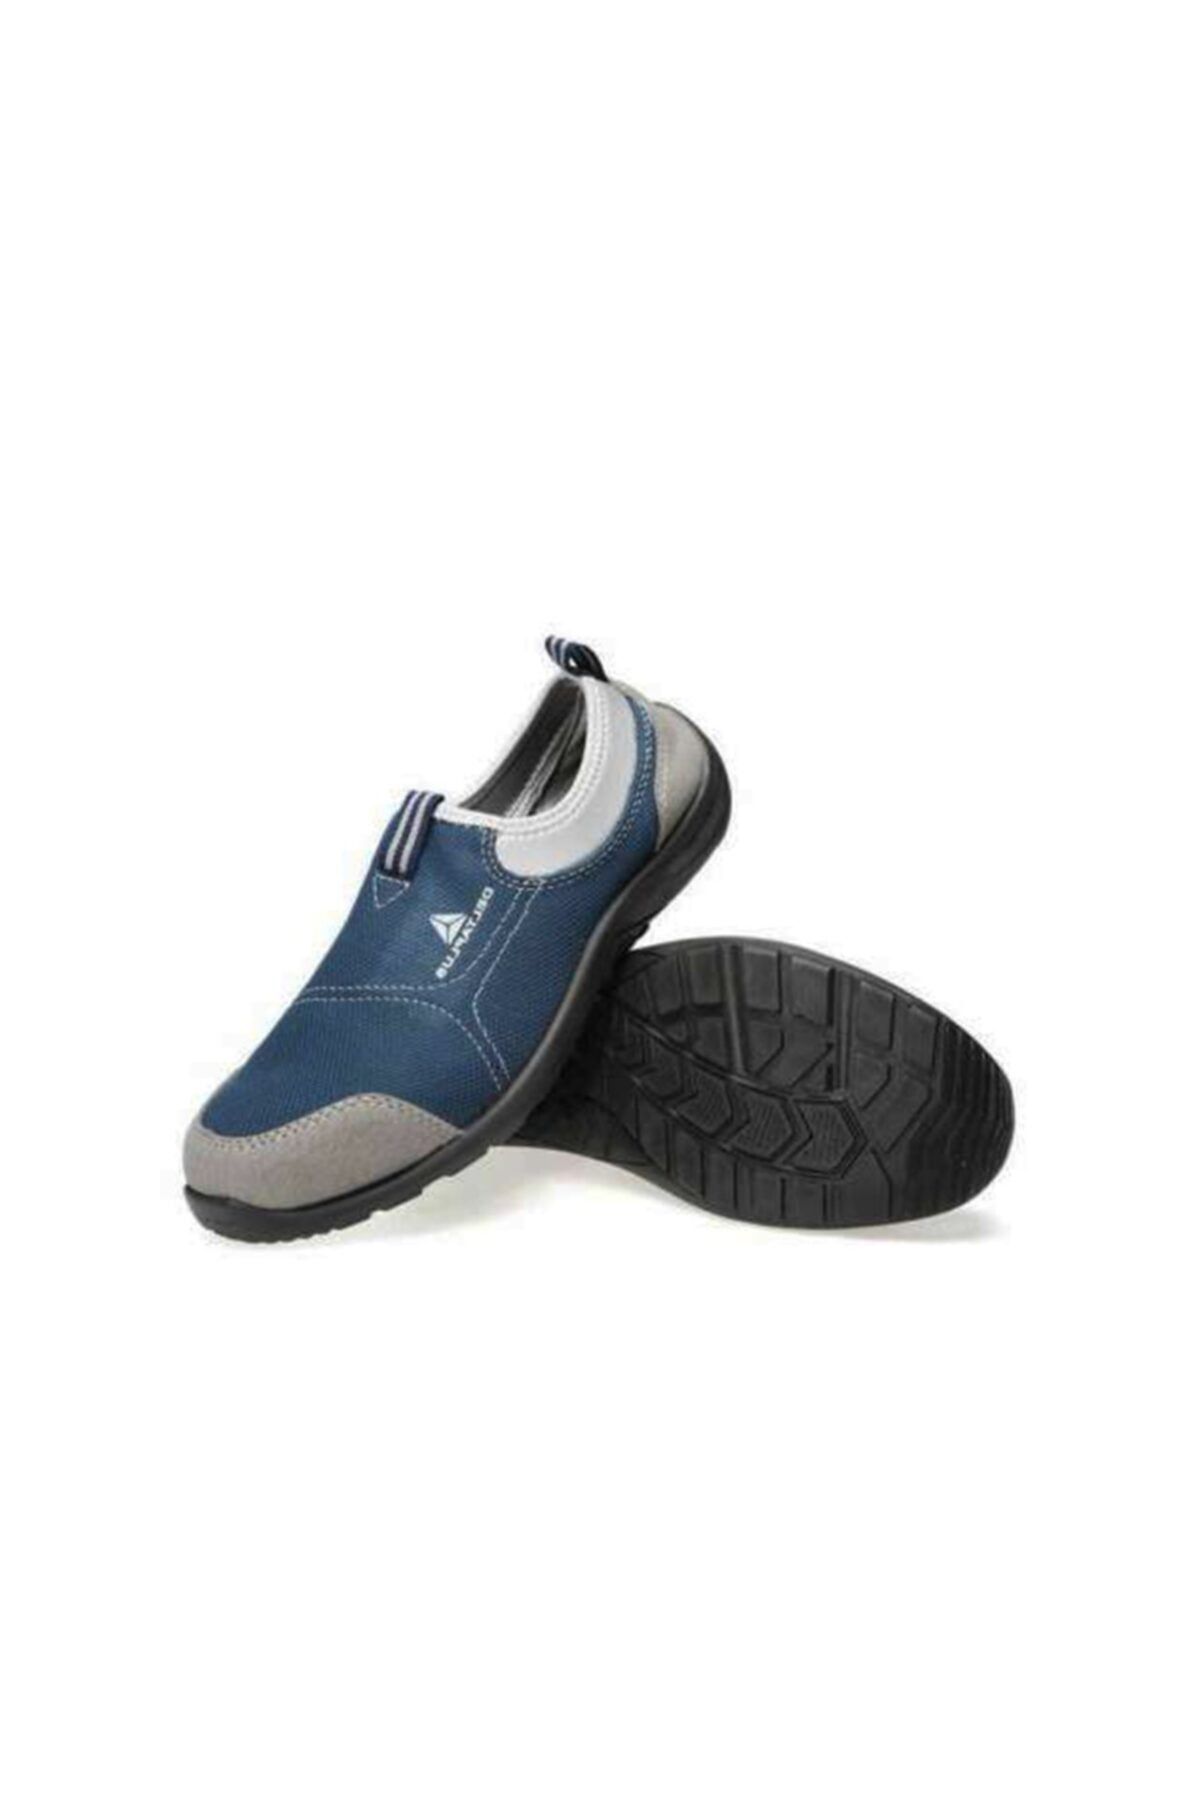 Delta Plus Deltaplus Mıami S1p Ithal Çelik Burun Çelik Ara Taban Spor Iş Ayakkabısı Mavi Renk